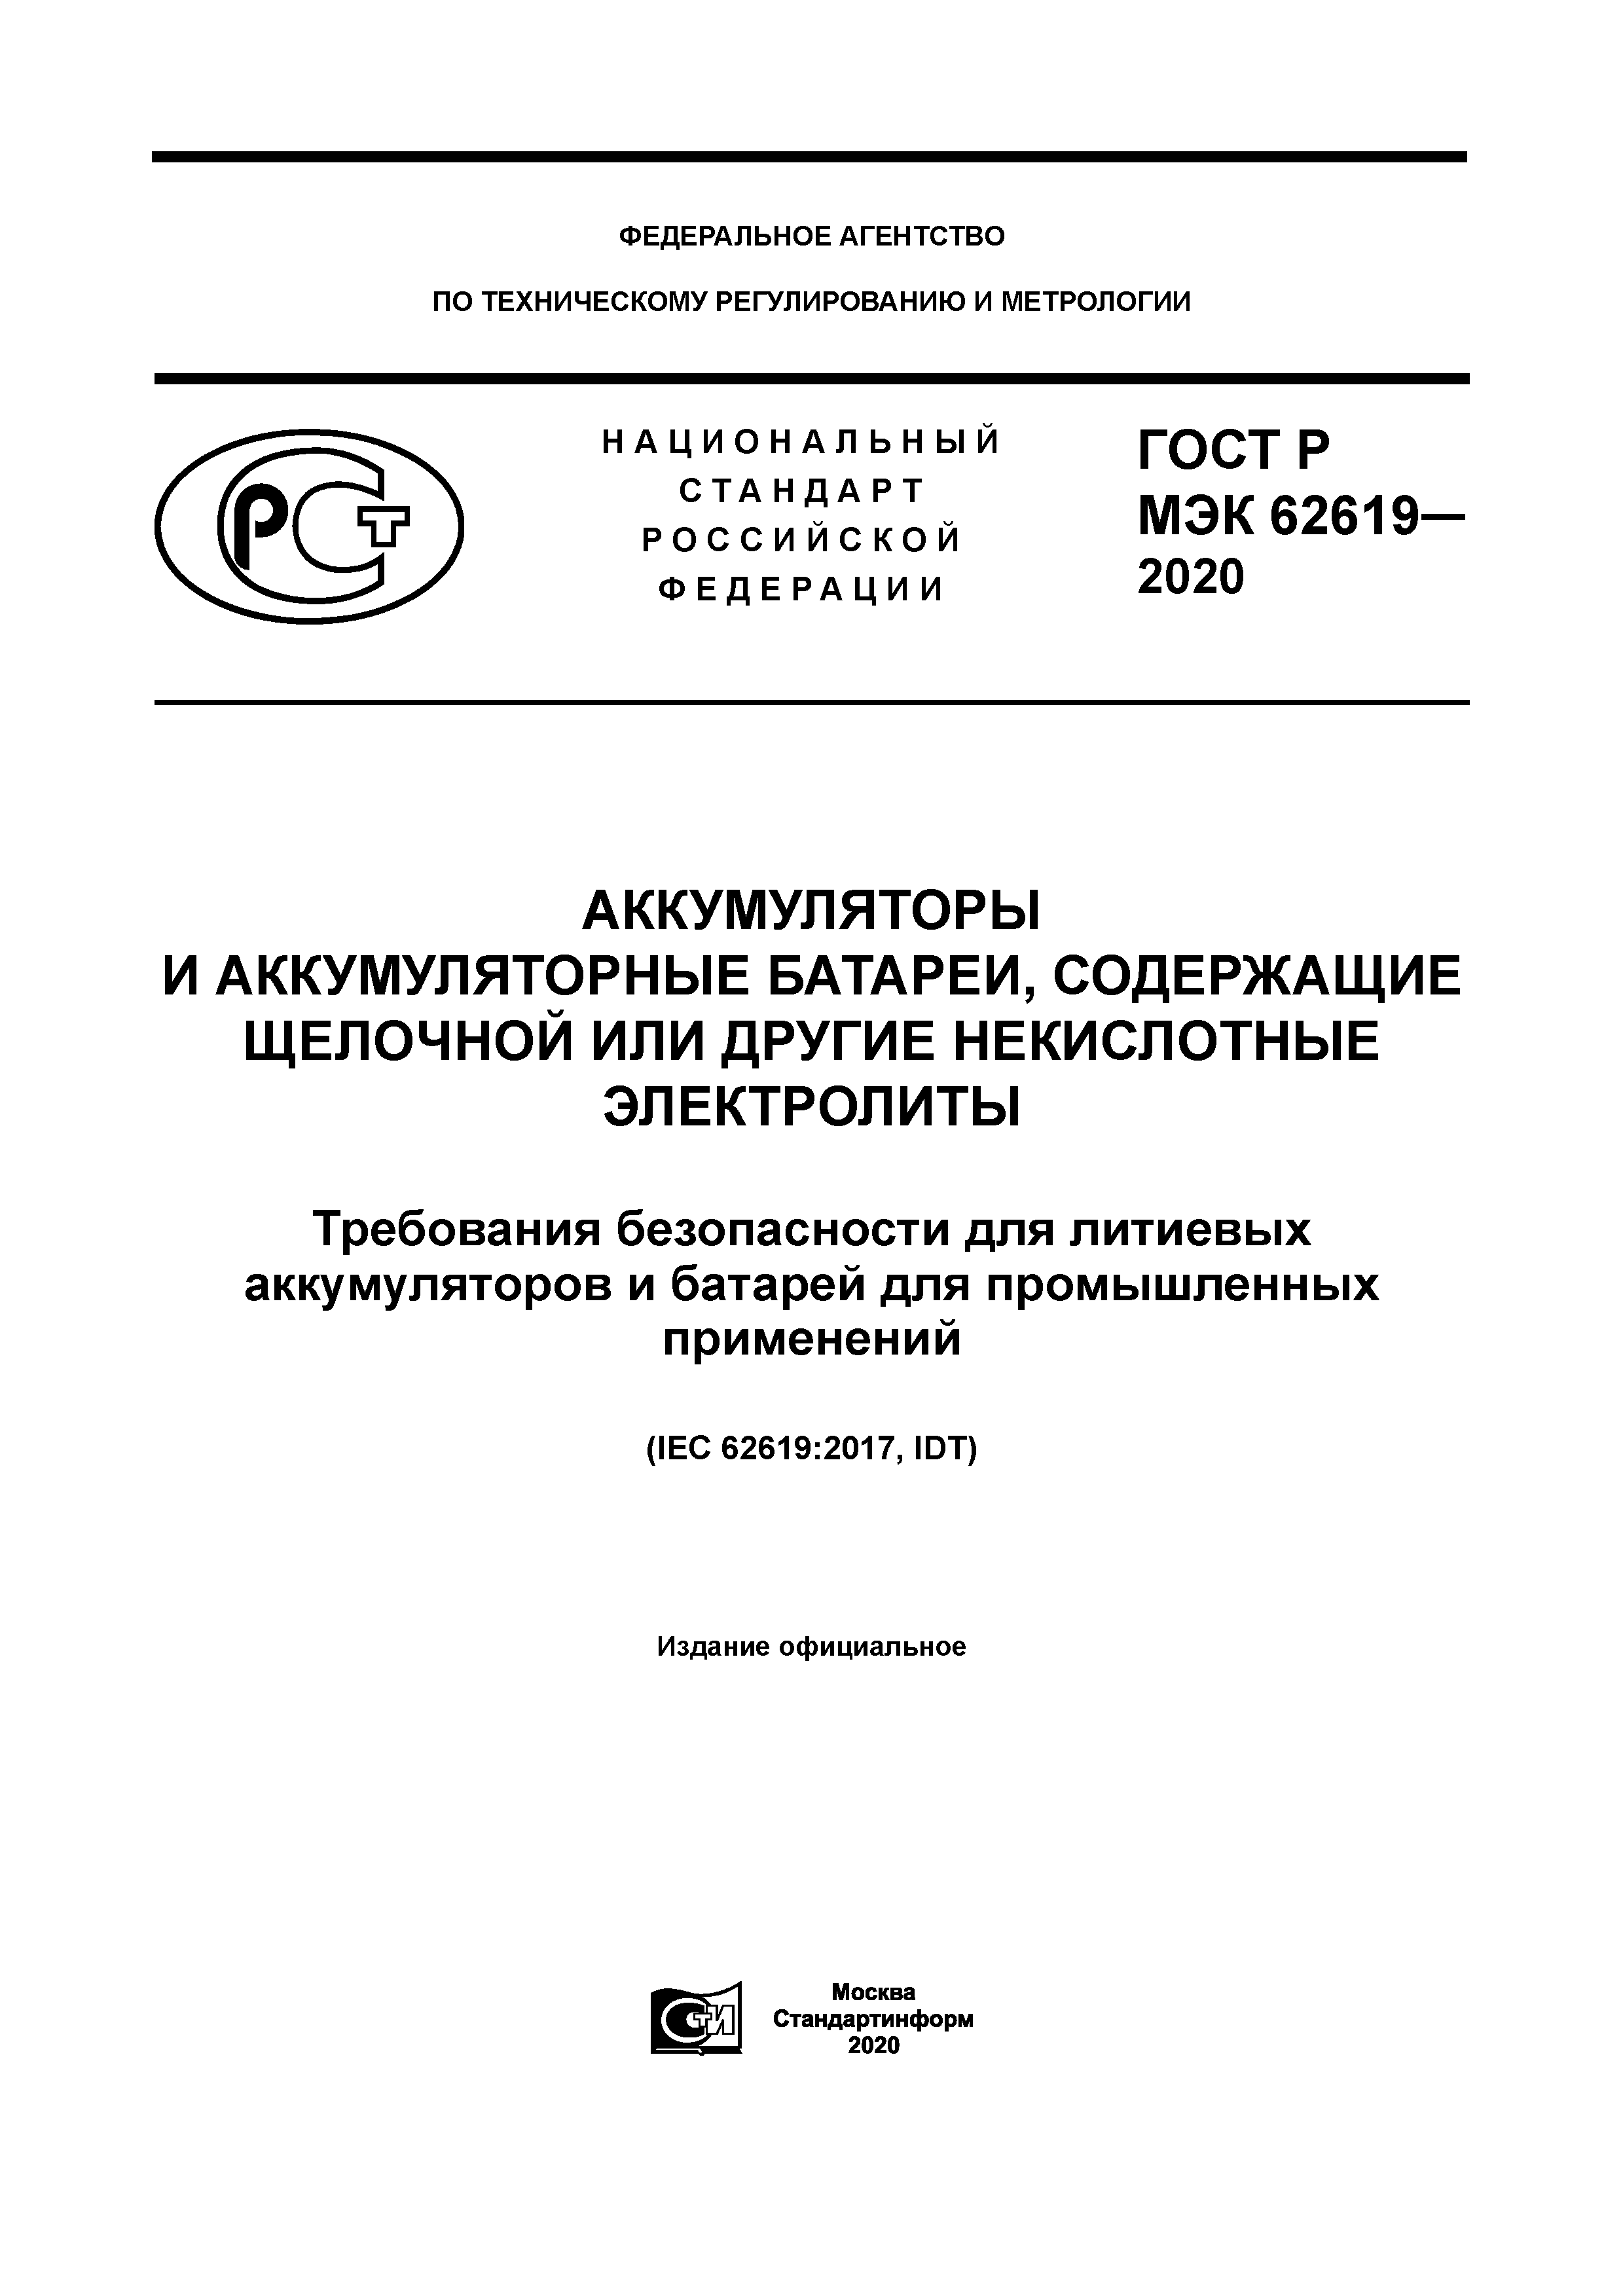 ГОСТ Р МЭК 62619-2020